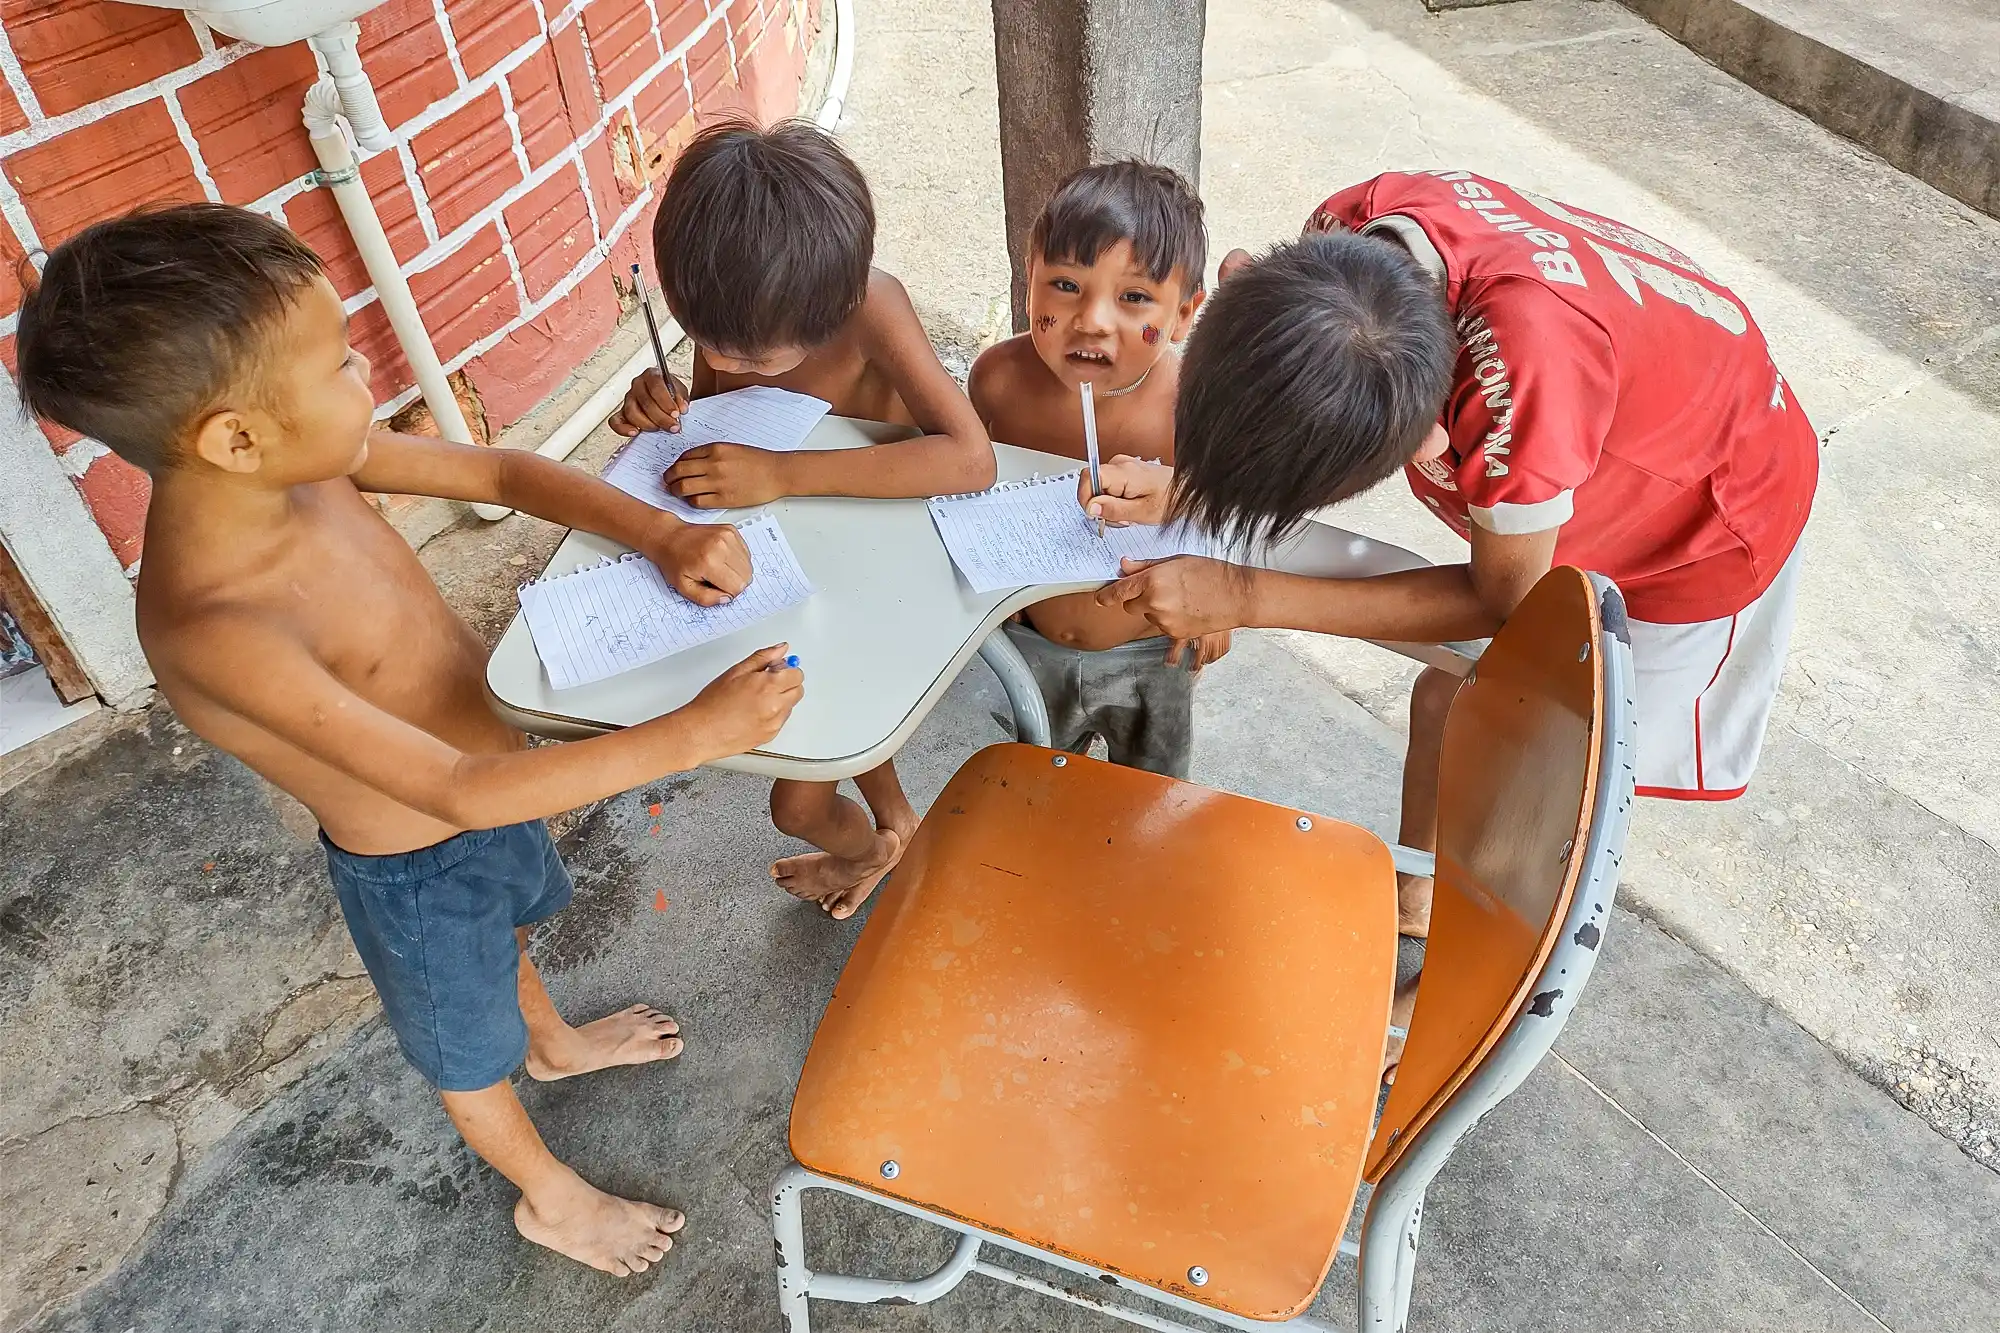 Marico (de camisa do Internacional), filho de Ifioma, e seus amigos brincam com as canetas e as folhas de papel da reportagem de Radis. — Foto: Luiz Felipe Stevanim.